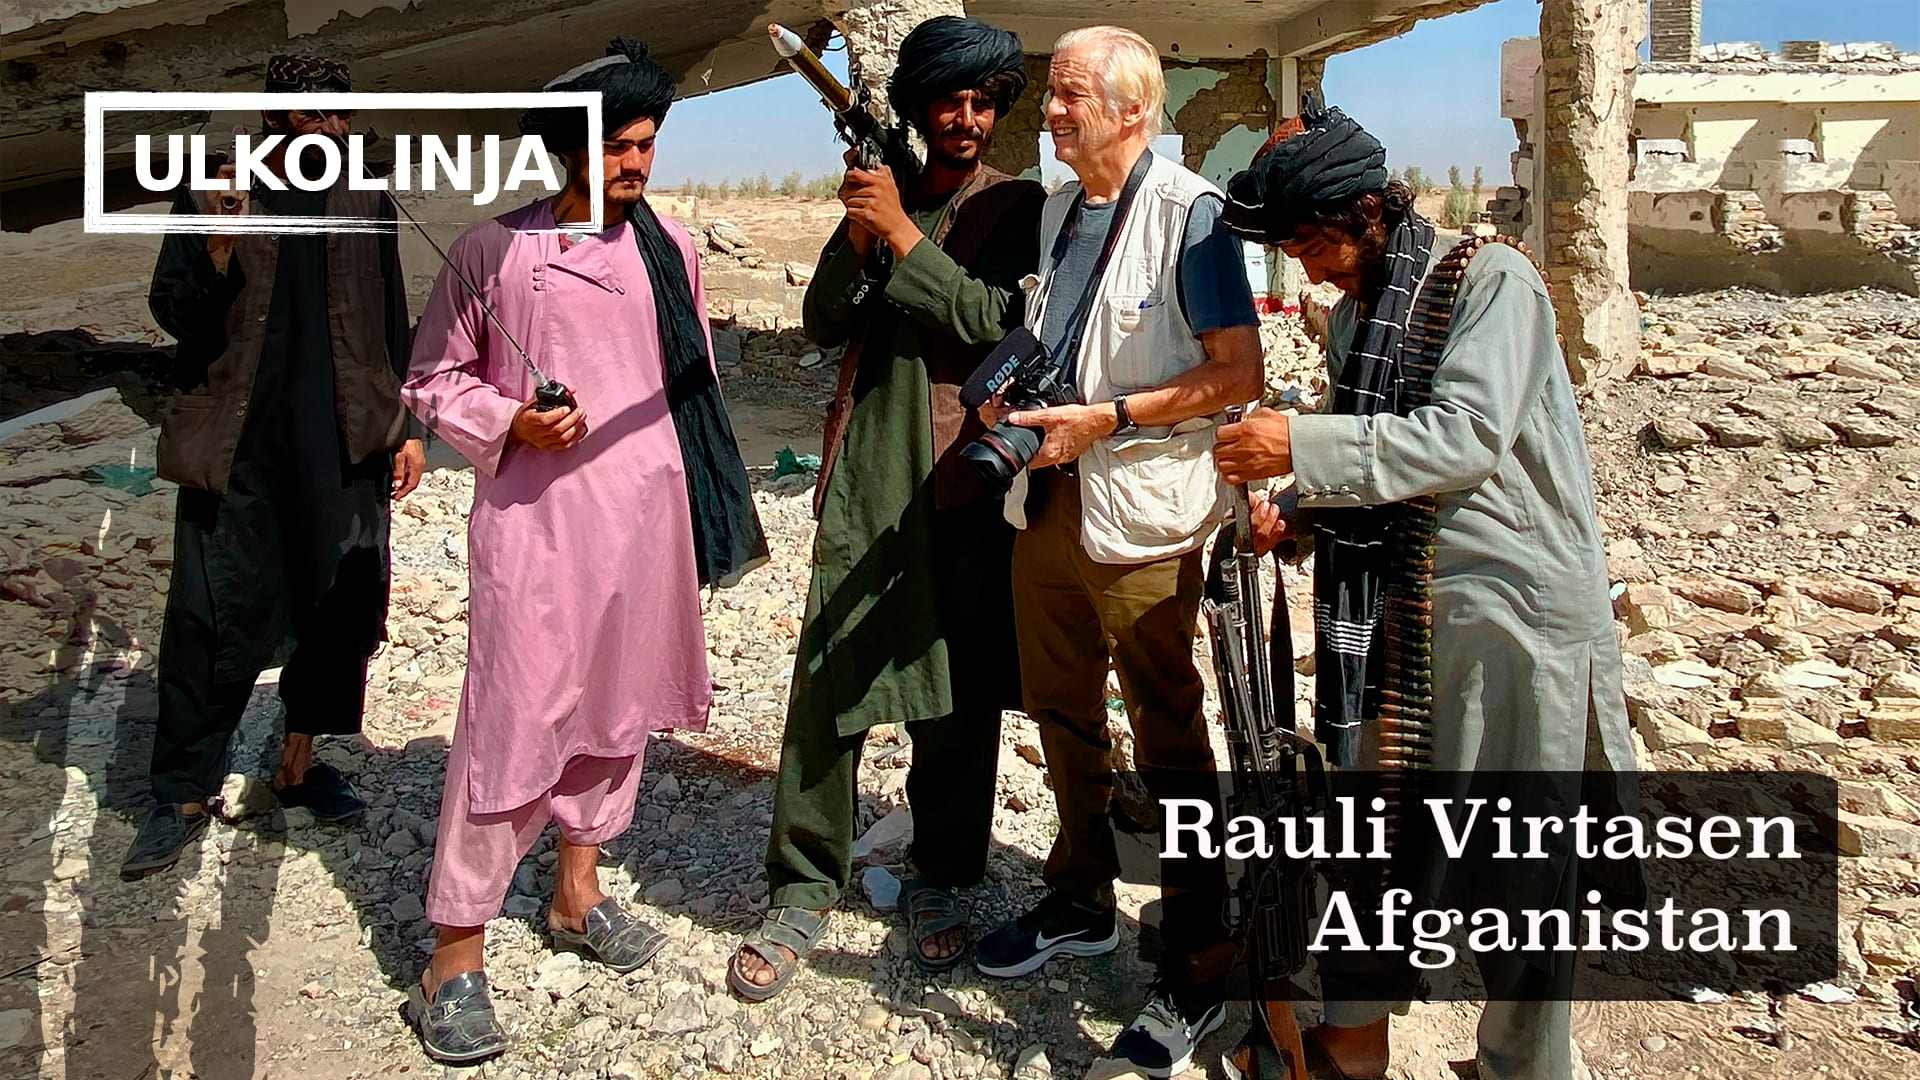 Rauli Virtanen työtehtävissä Afganistanissa. Hän seisoo kamera kädessä keskellä Taliban-miehiä. Taliban-miehillä on käsissään aseita.